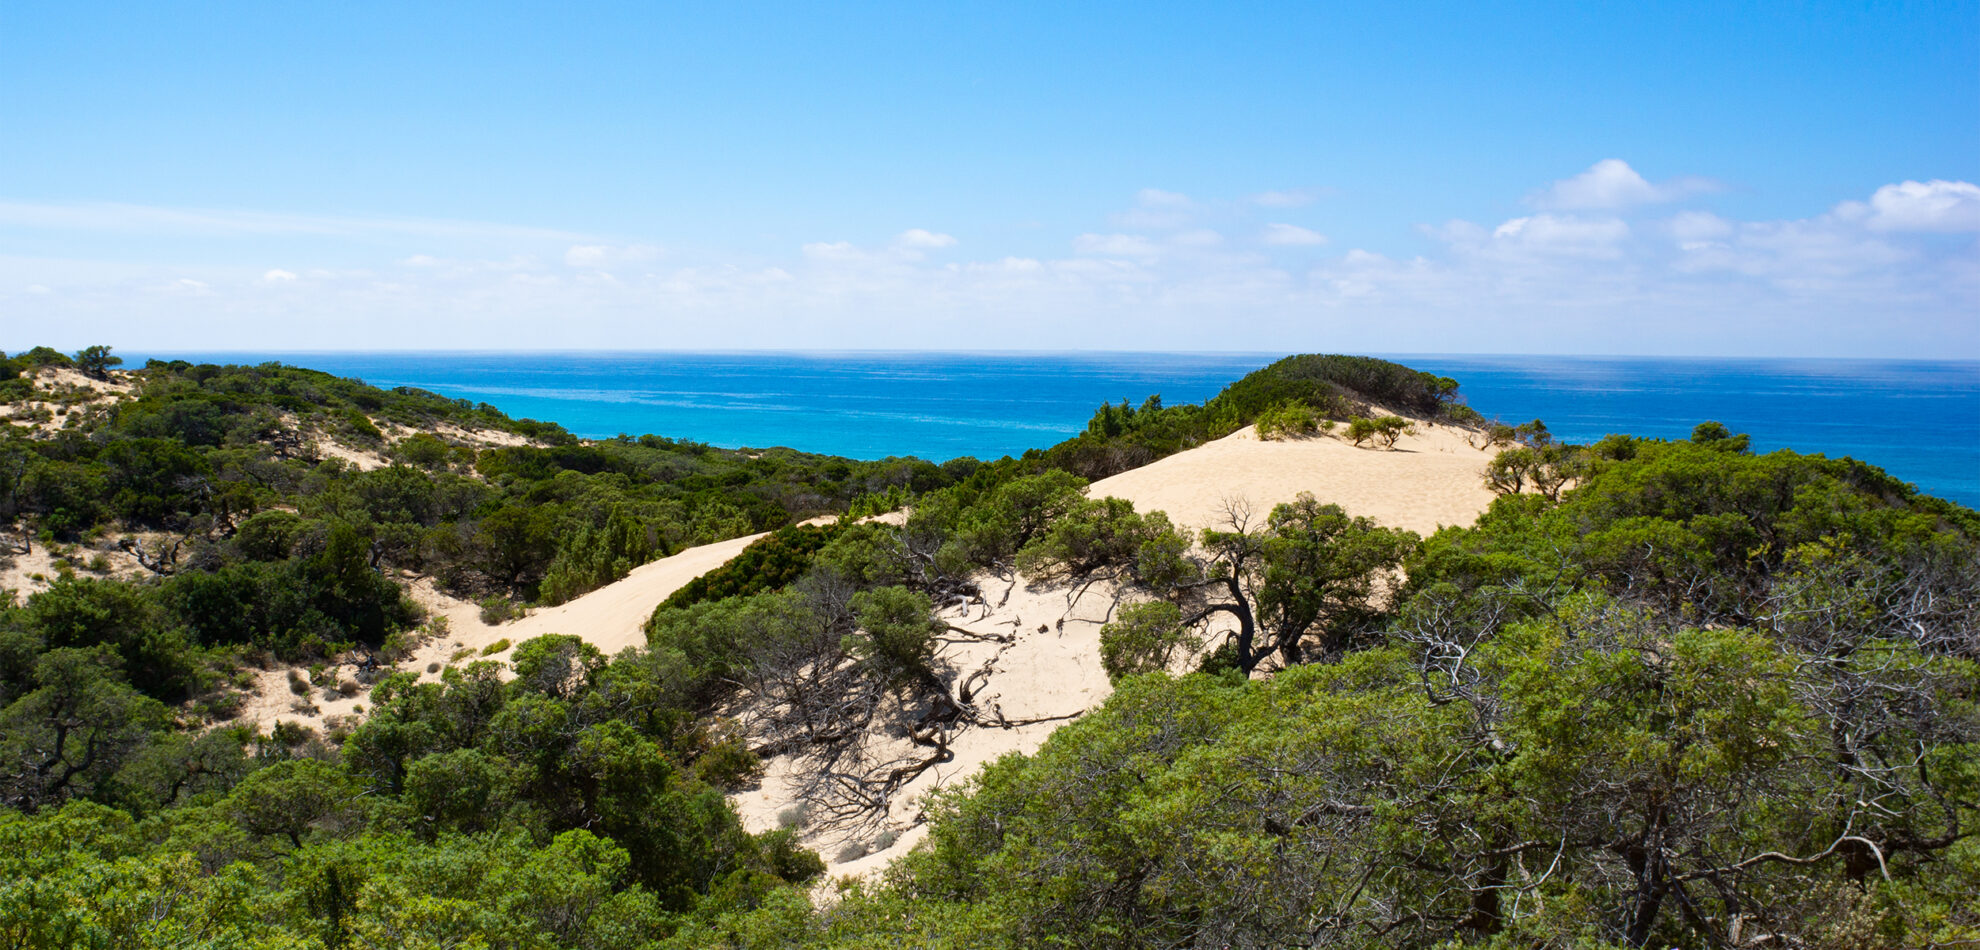 the immense dune world of Costa Verde